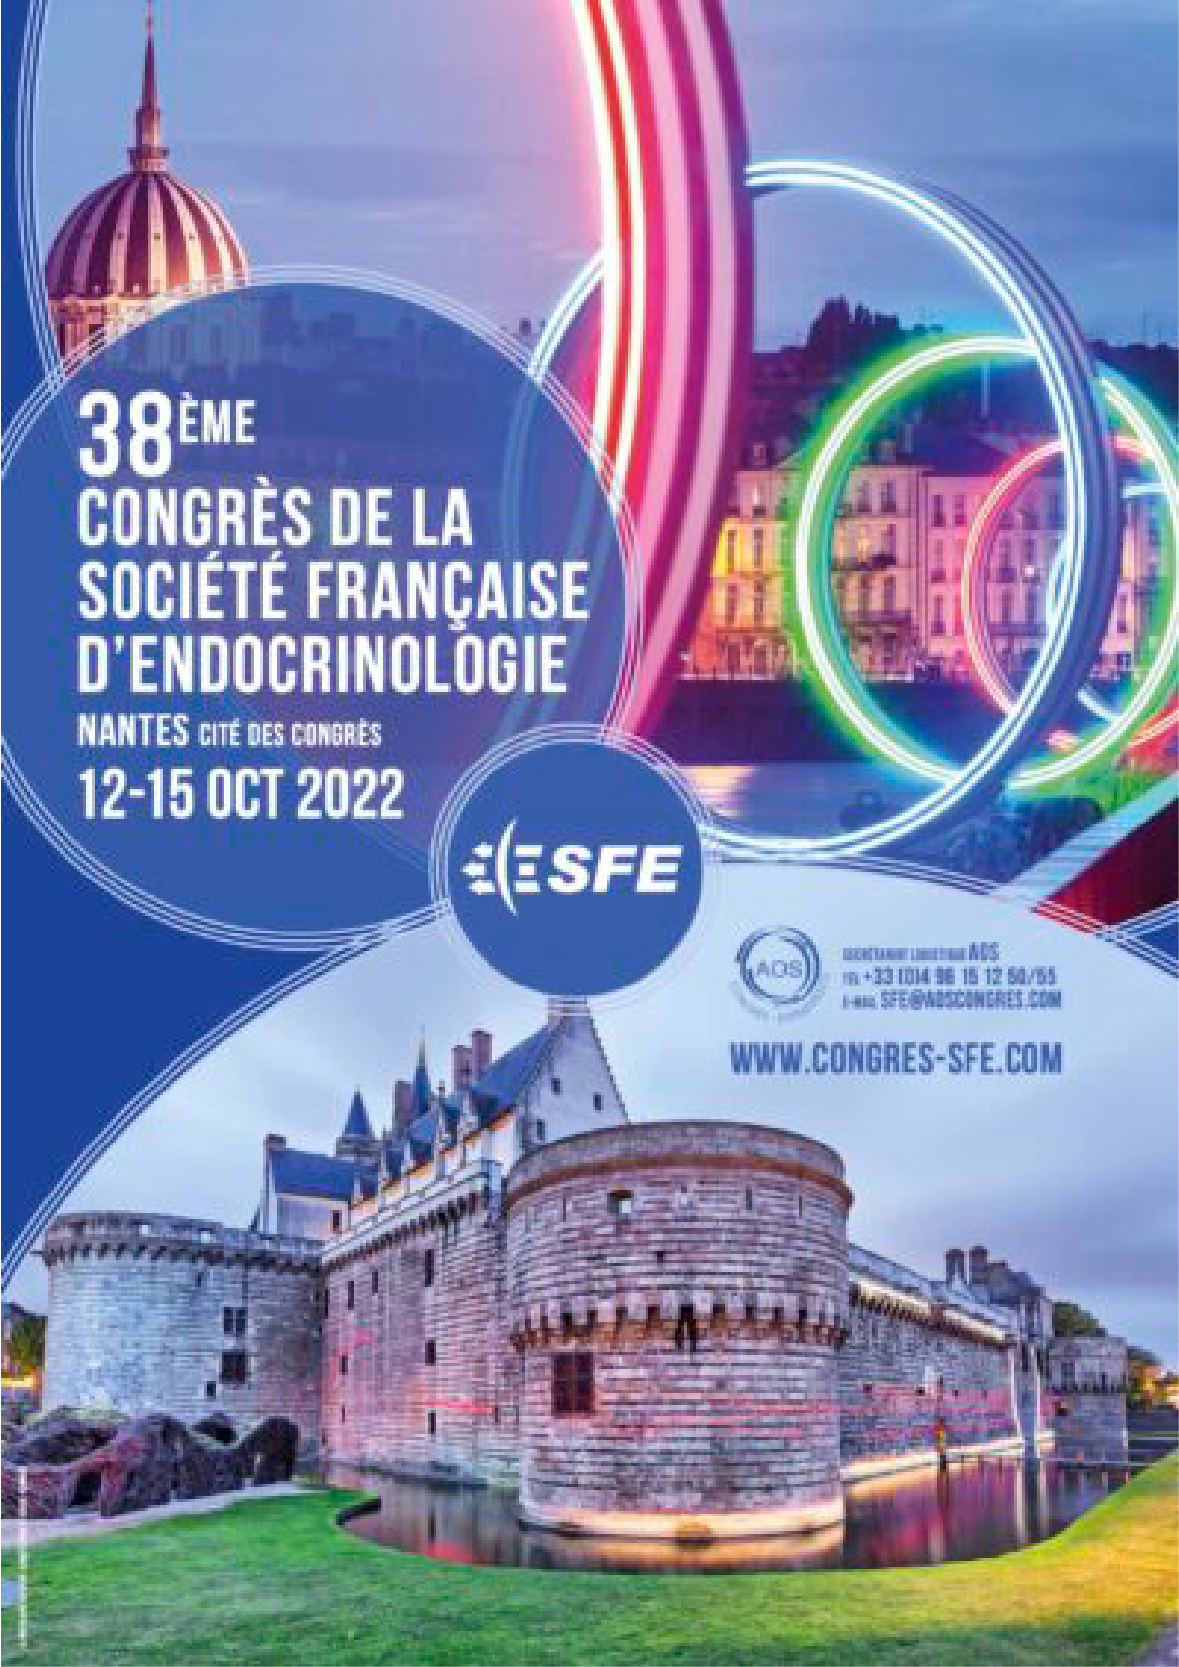 38ème congrès de la Société Française d’Endocrinologie – SFE 2022